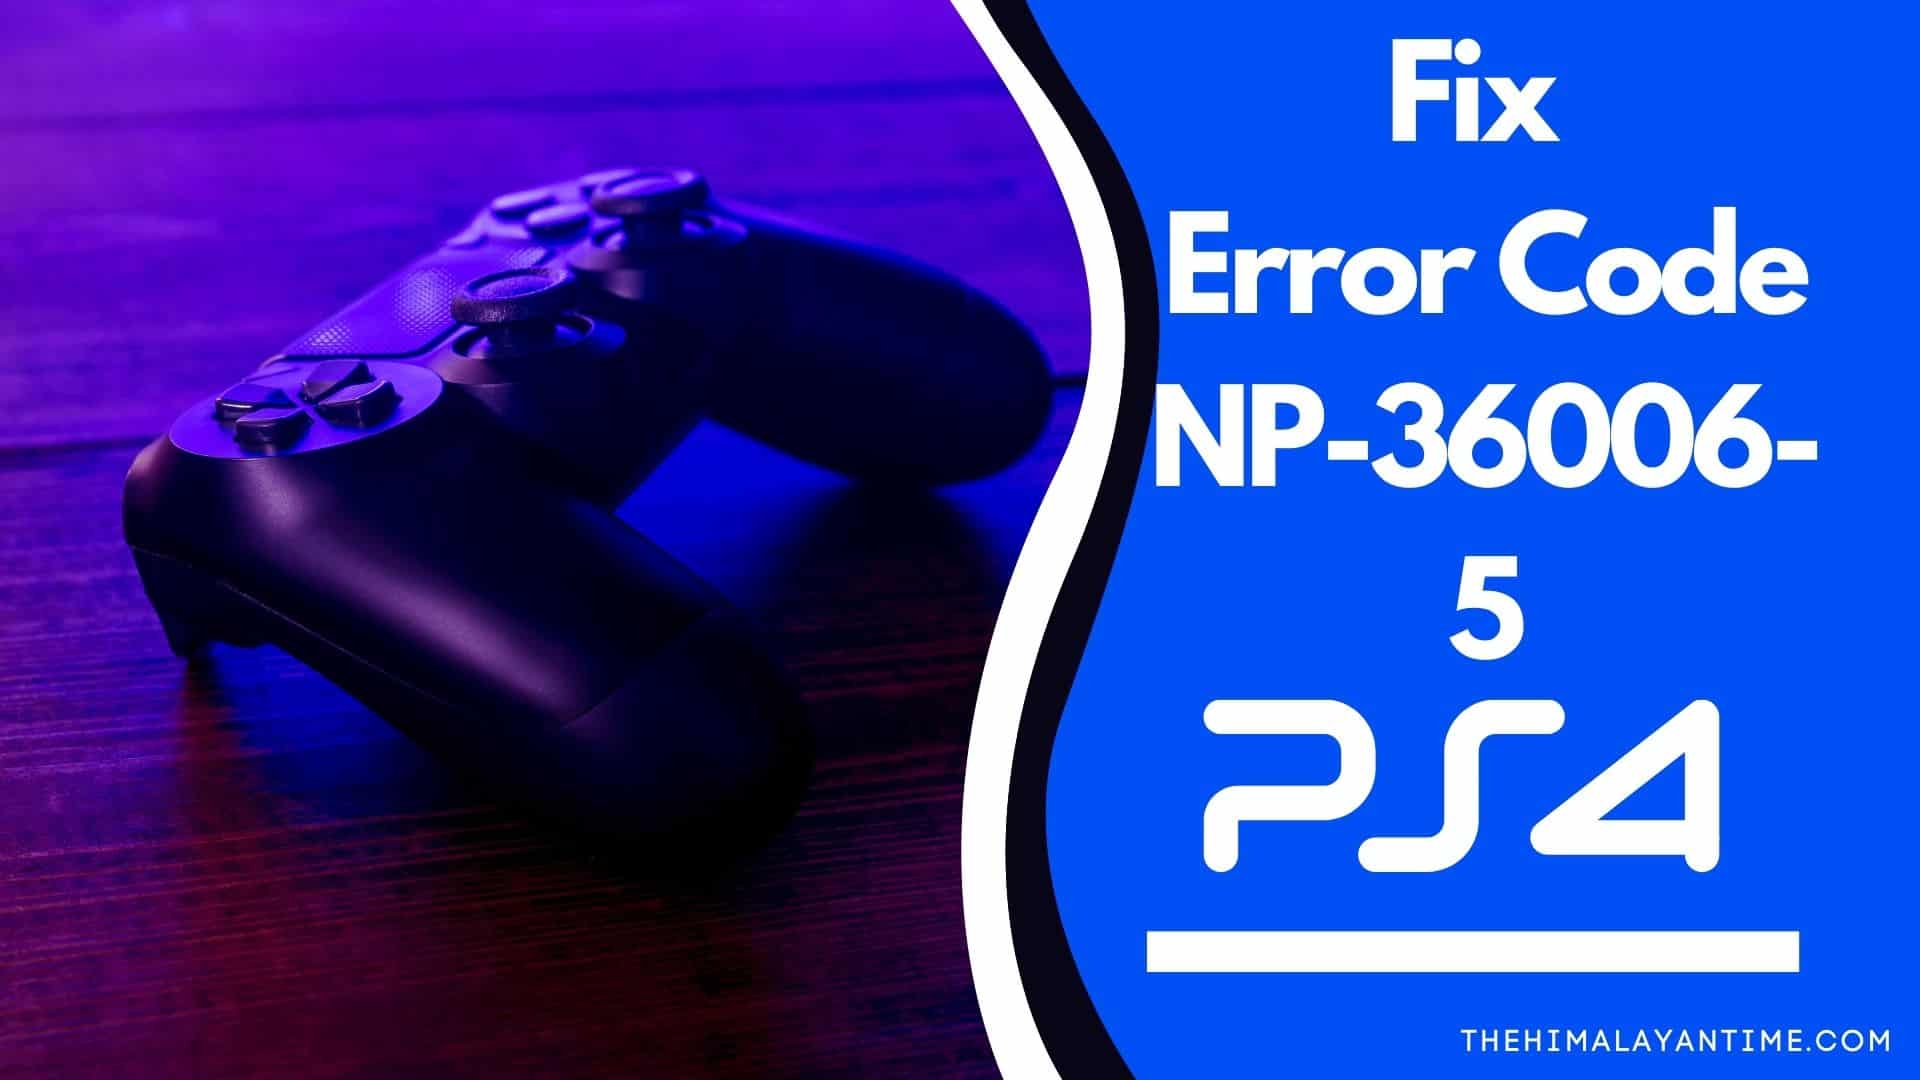 PS4: Error Code NP-36006-5